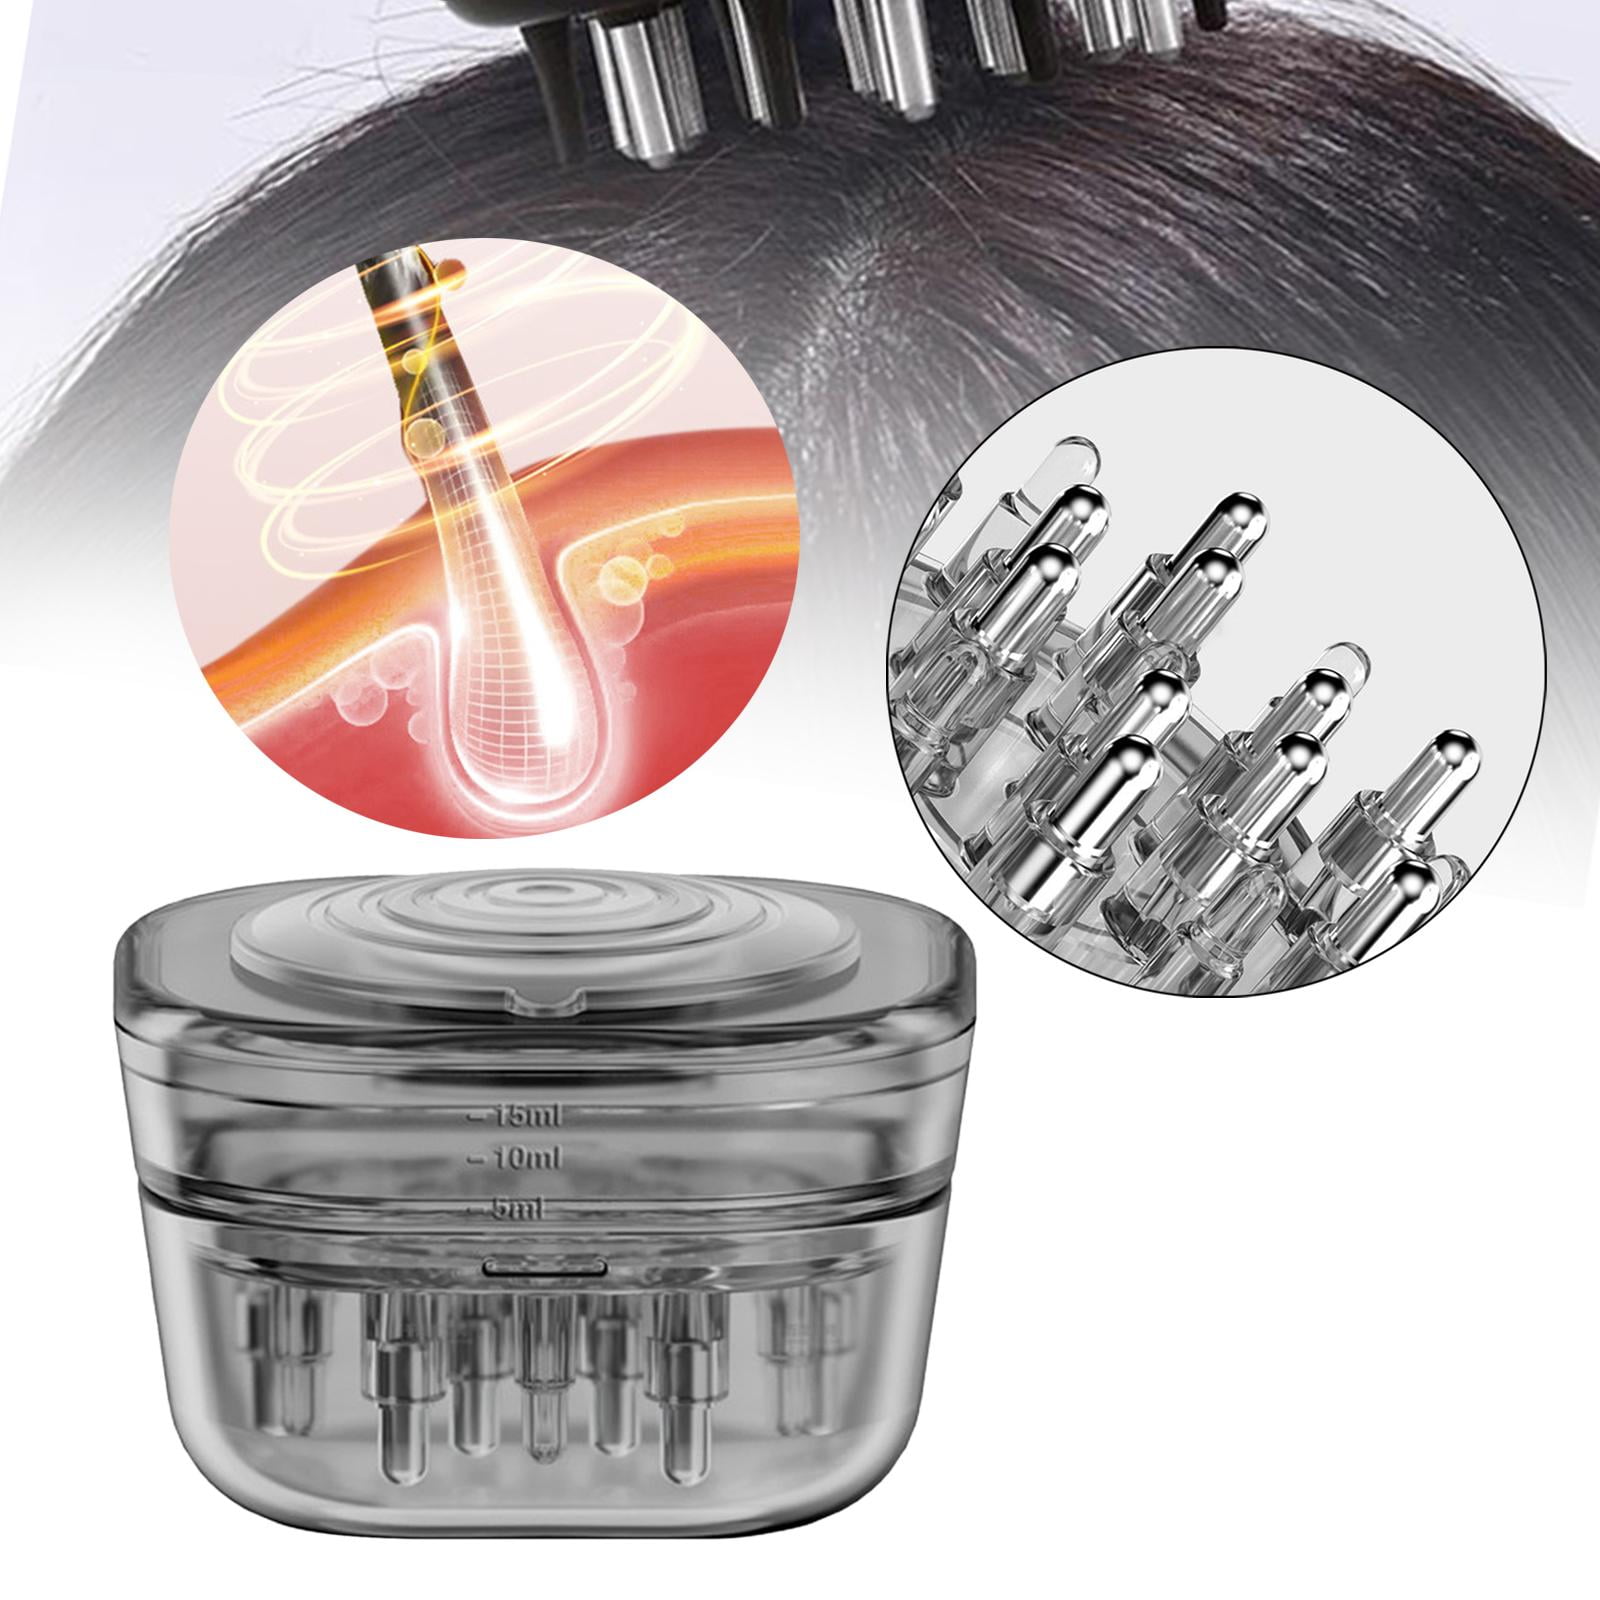 ARTIBETTER 5pcs Scalp Applicator Oil Dispensing Comb Head Massage  Applicator Hair Oil Dispenser Comb Root Comb Applicator Oil Applying Comb  Scalp